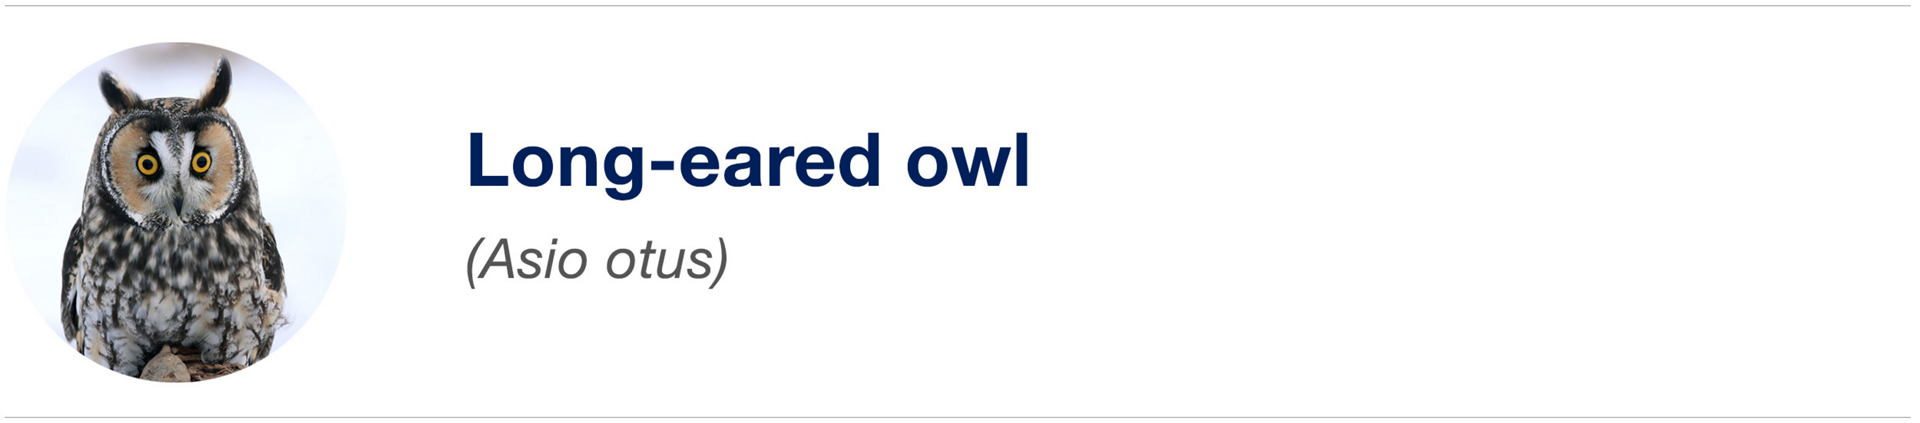 Biomimicry Icon Owl